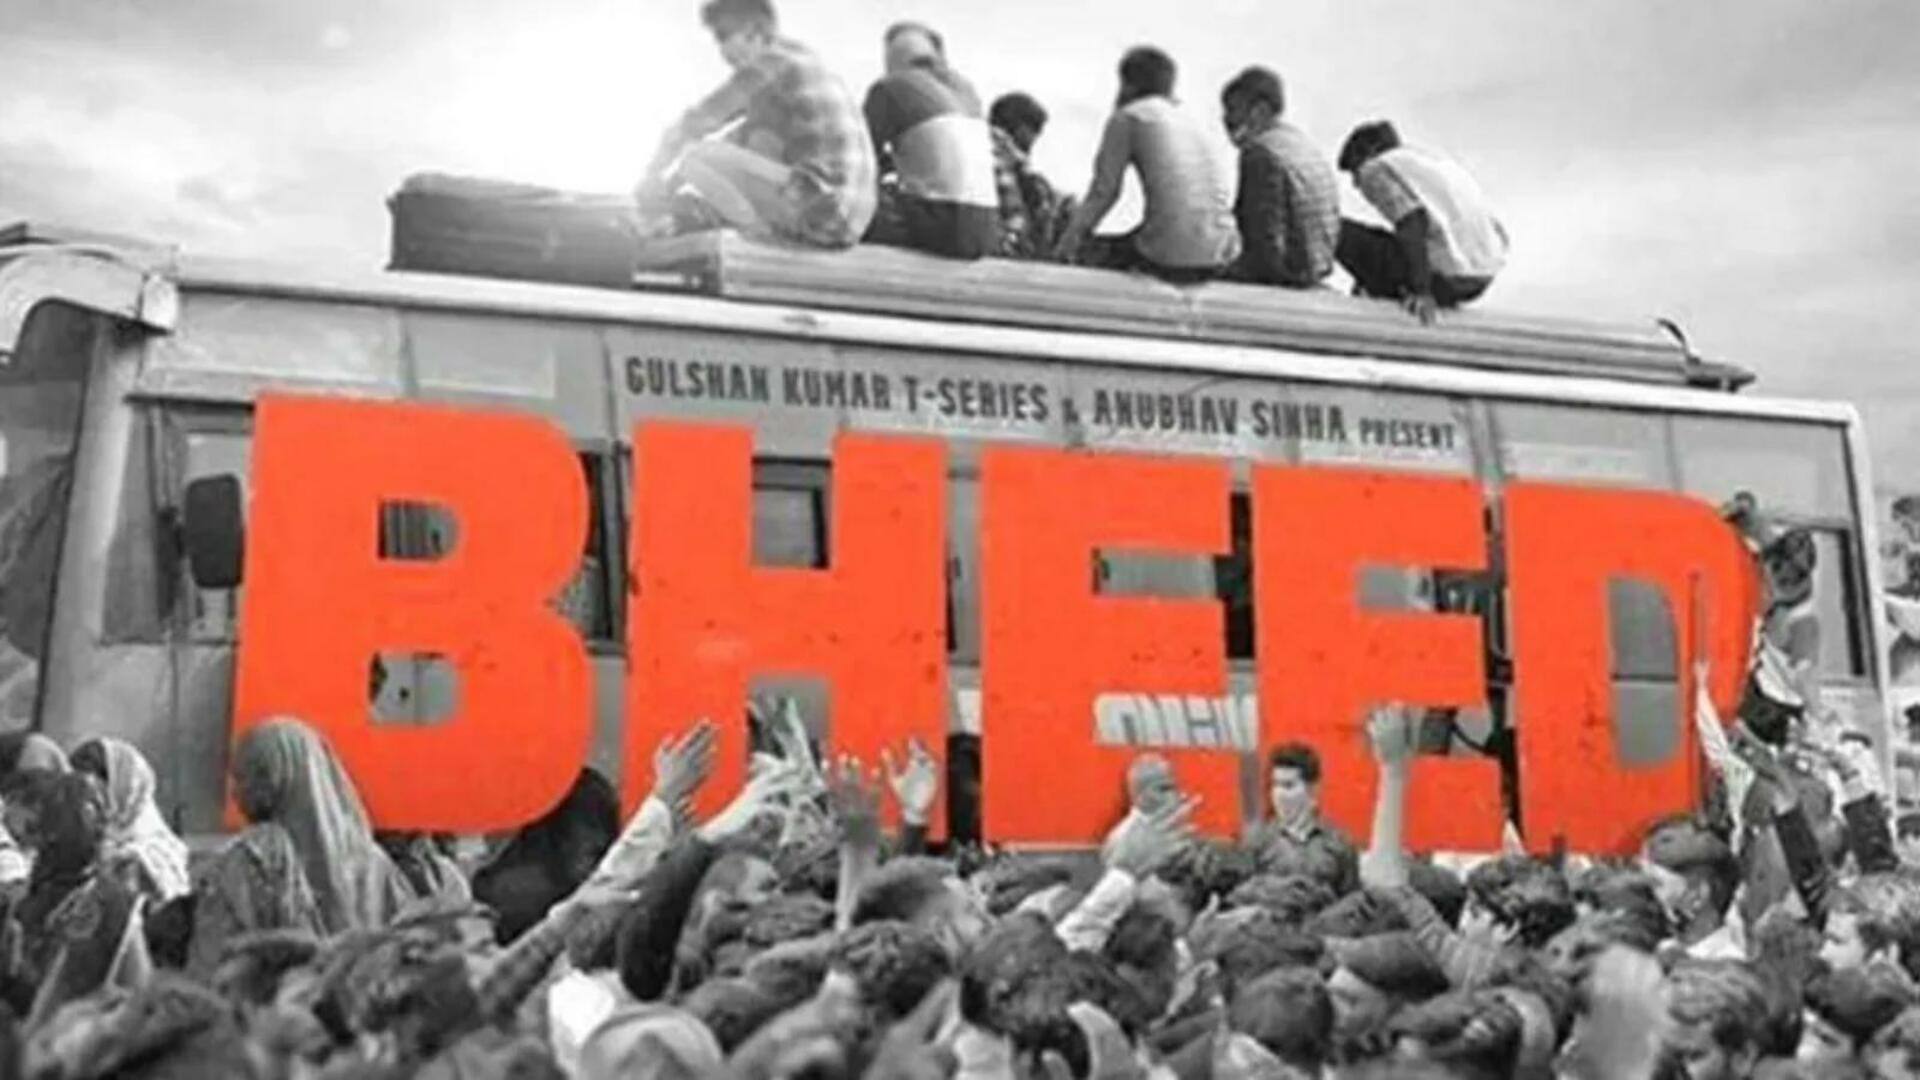 अनुभव सिन्हा की 'भीड़' 13 कट के बाद हुई रिलीज, वायरल हुआ सेंसर बोर्ड का सर्टिफिकेट